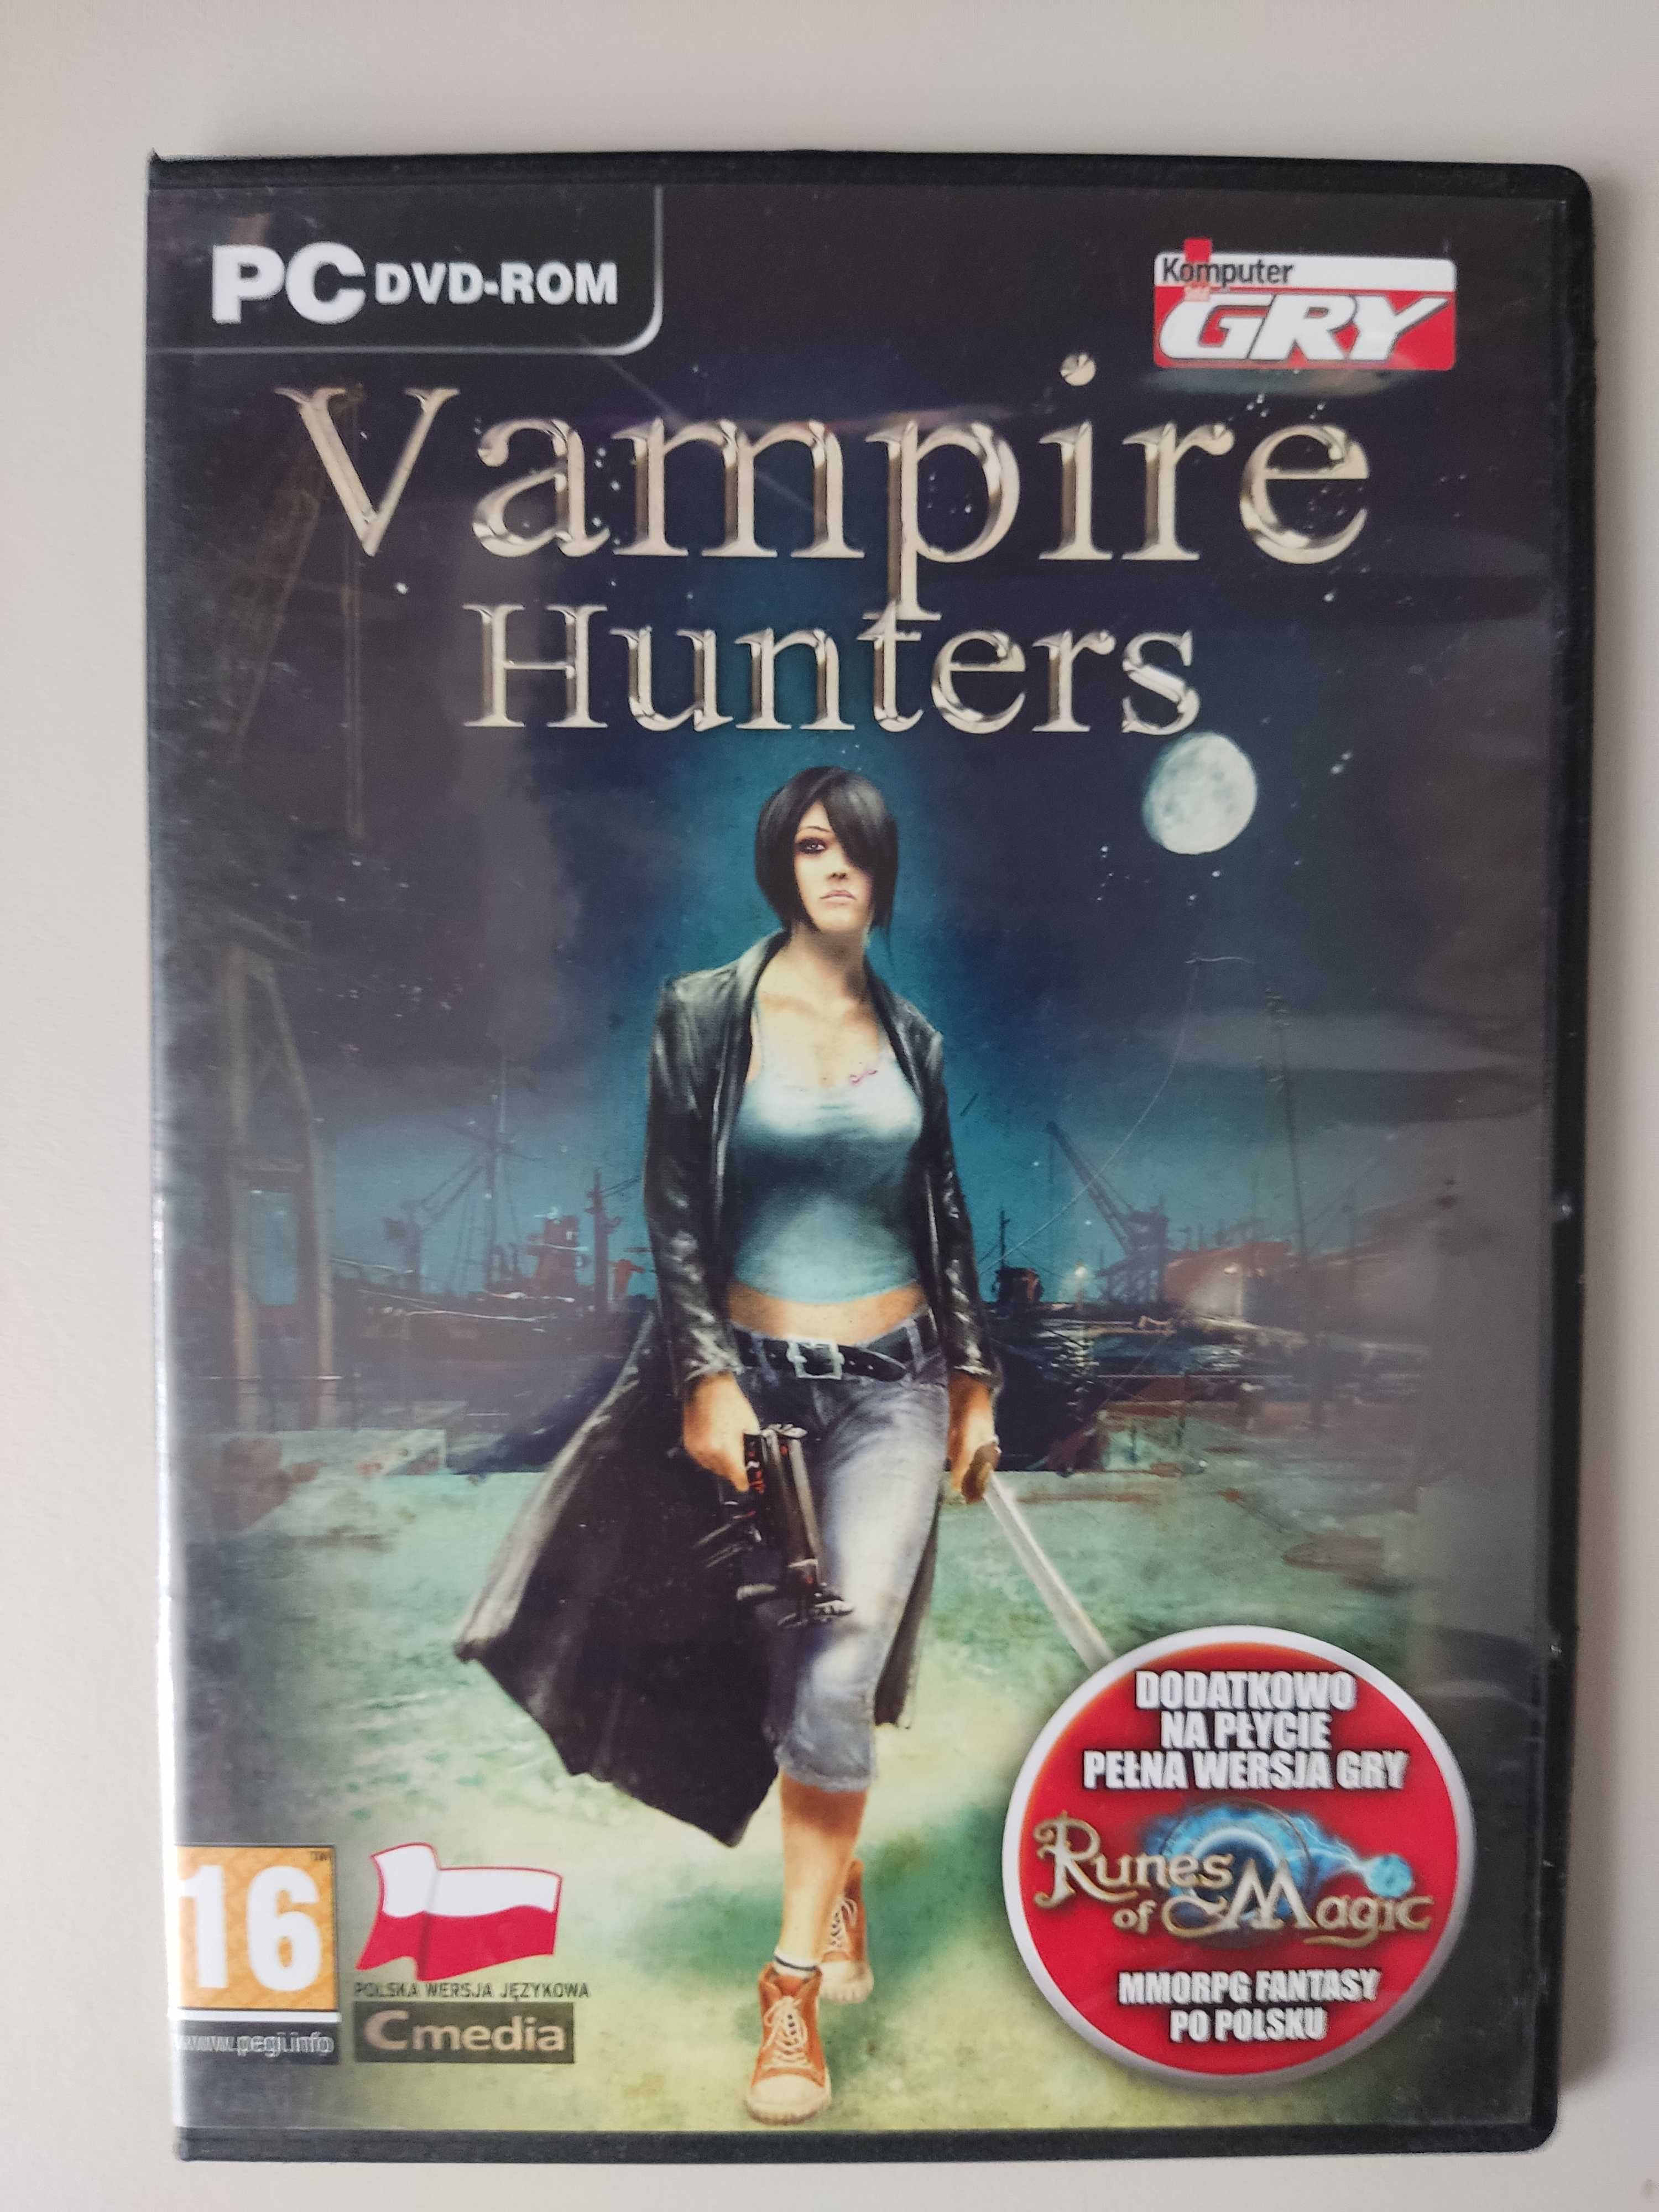 Vampire Hunters - polska wersja językowa